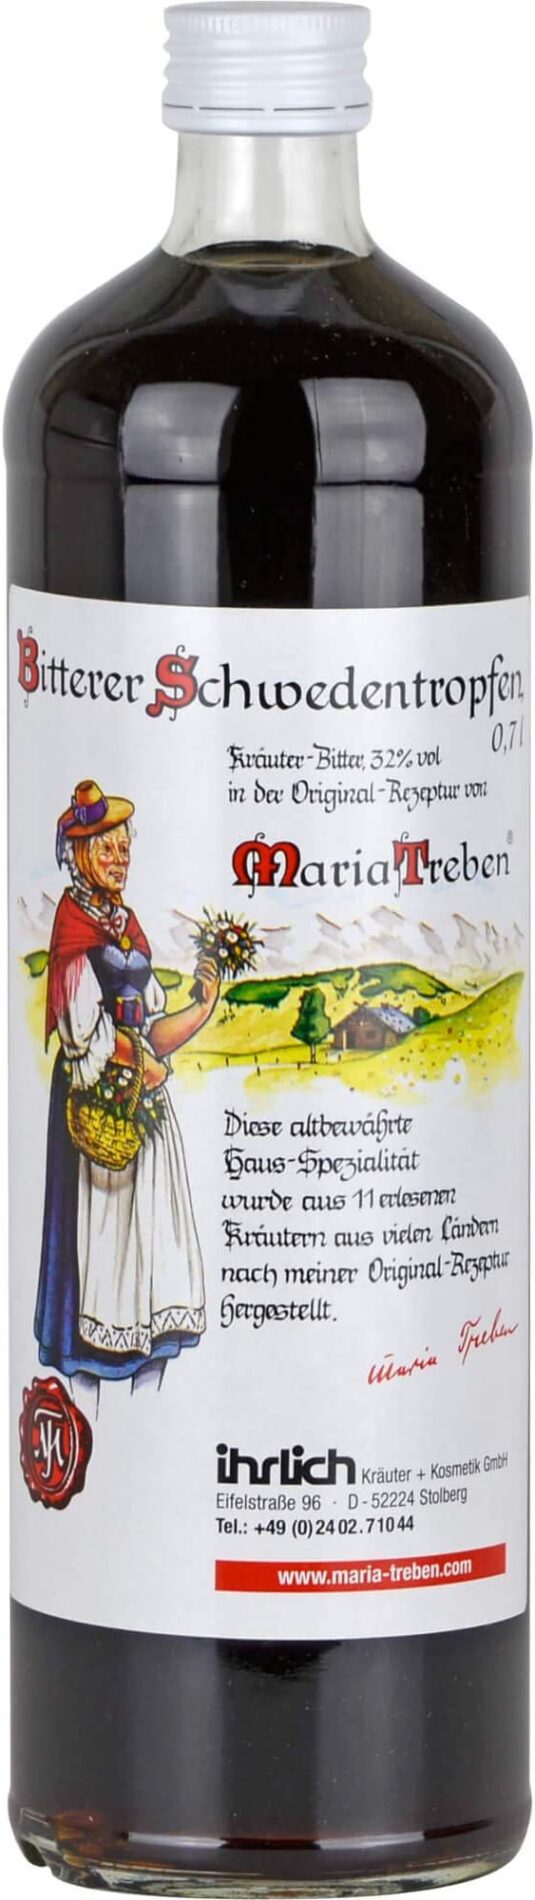 Maria Treben Bitterer Schwedentropfen (32% Vol)